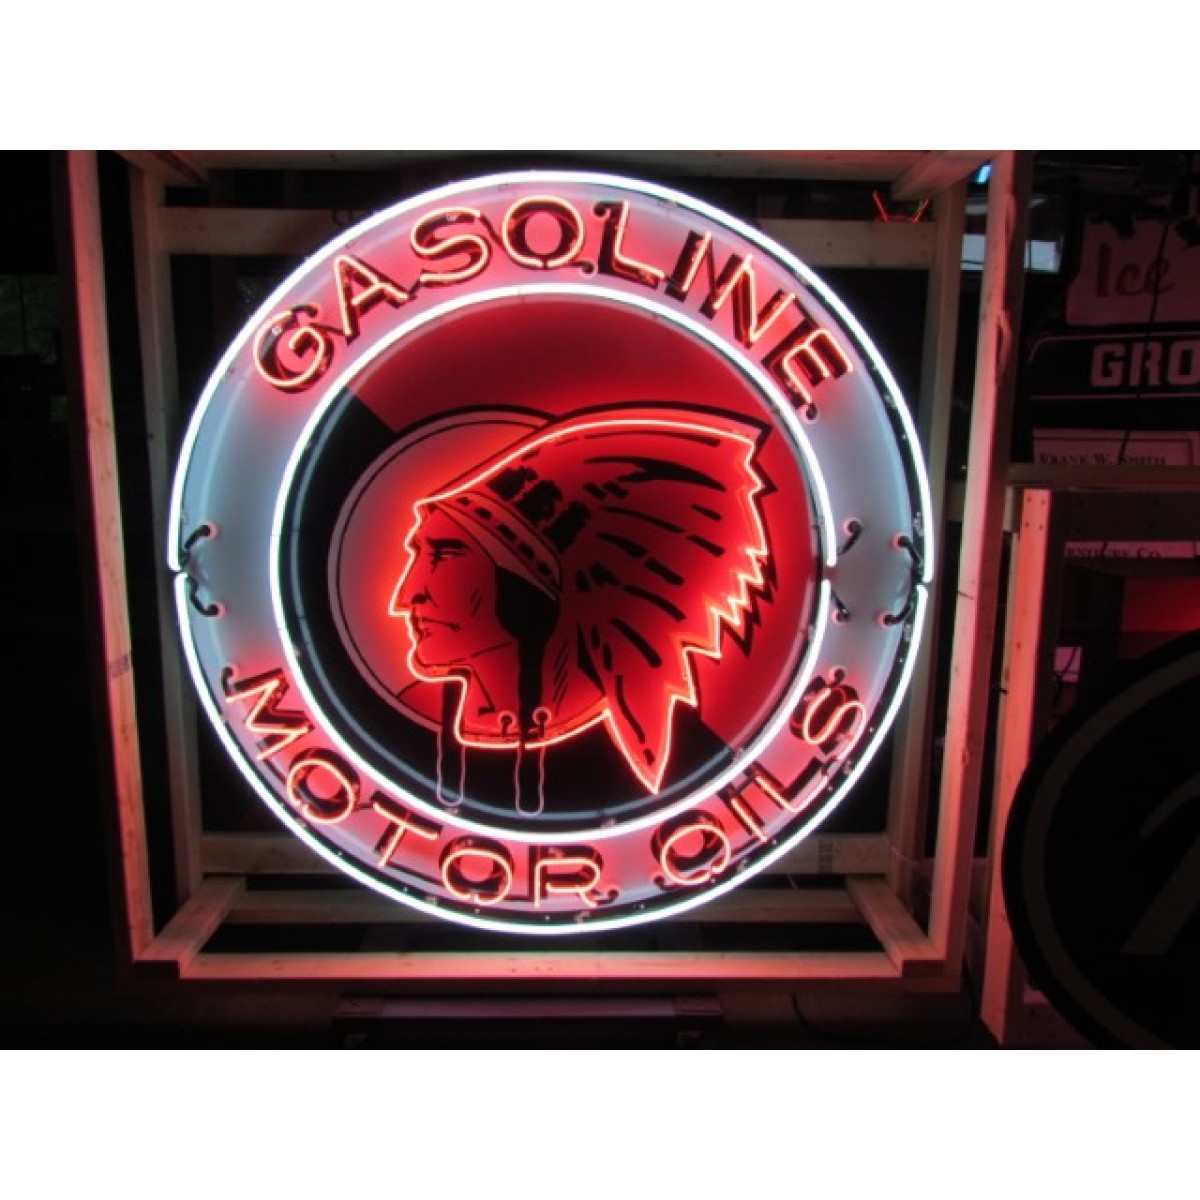 New Red Indian Gasoline Motor Oils Porcelain Neon Sign 60